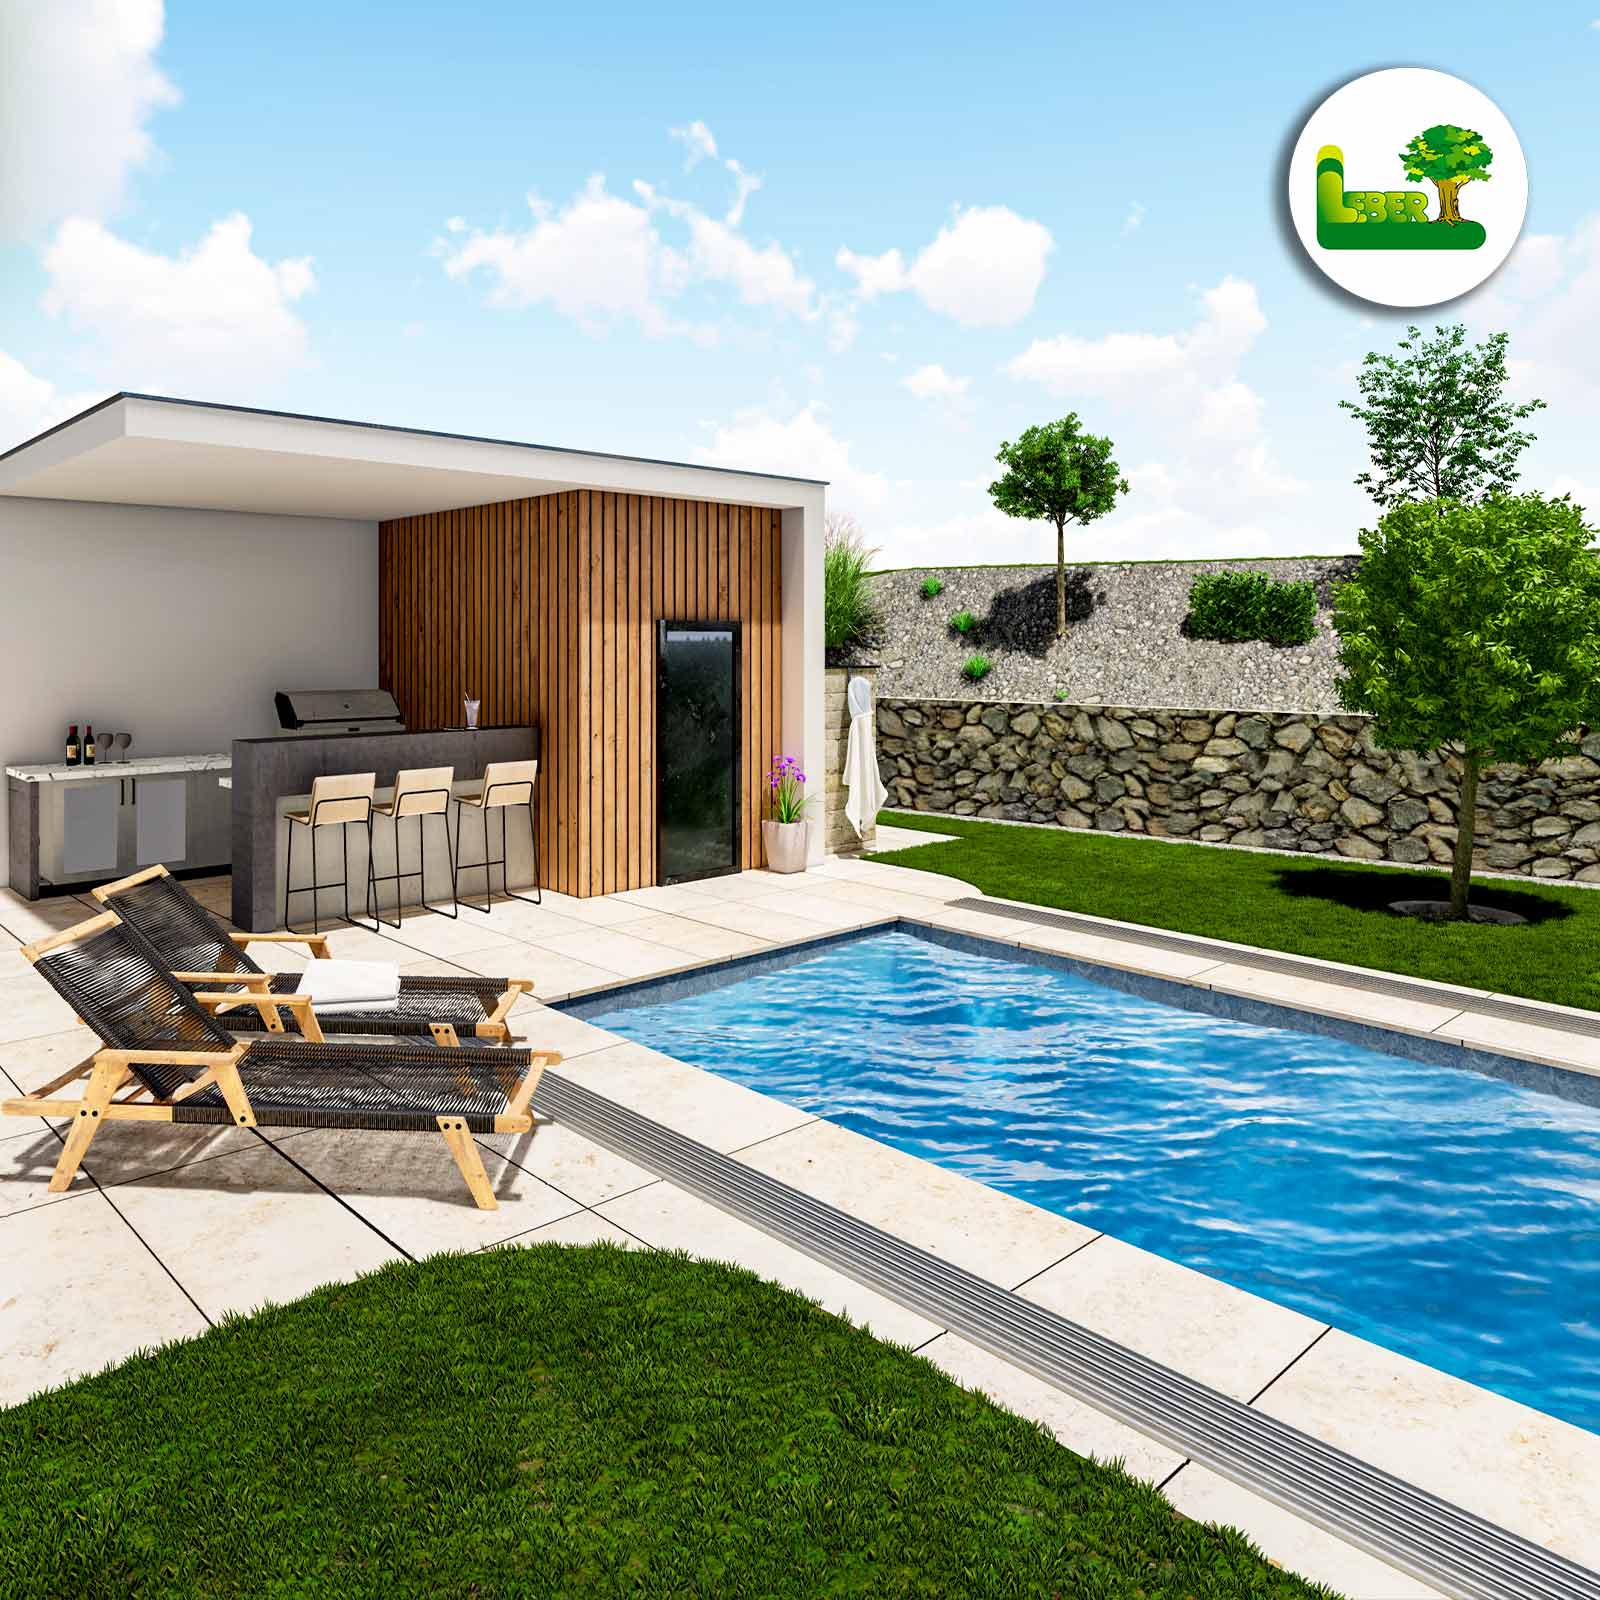 3D Planung - Exklusive Außenanlage. Gartenanlage mit Poolhaus, PP Pool, Plattenverlegung und Gartengestaltung